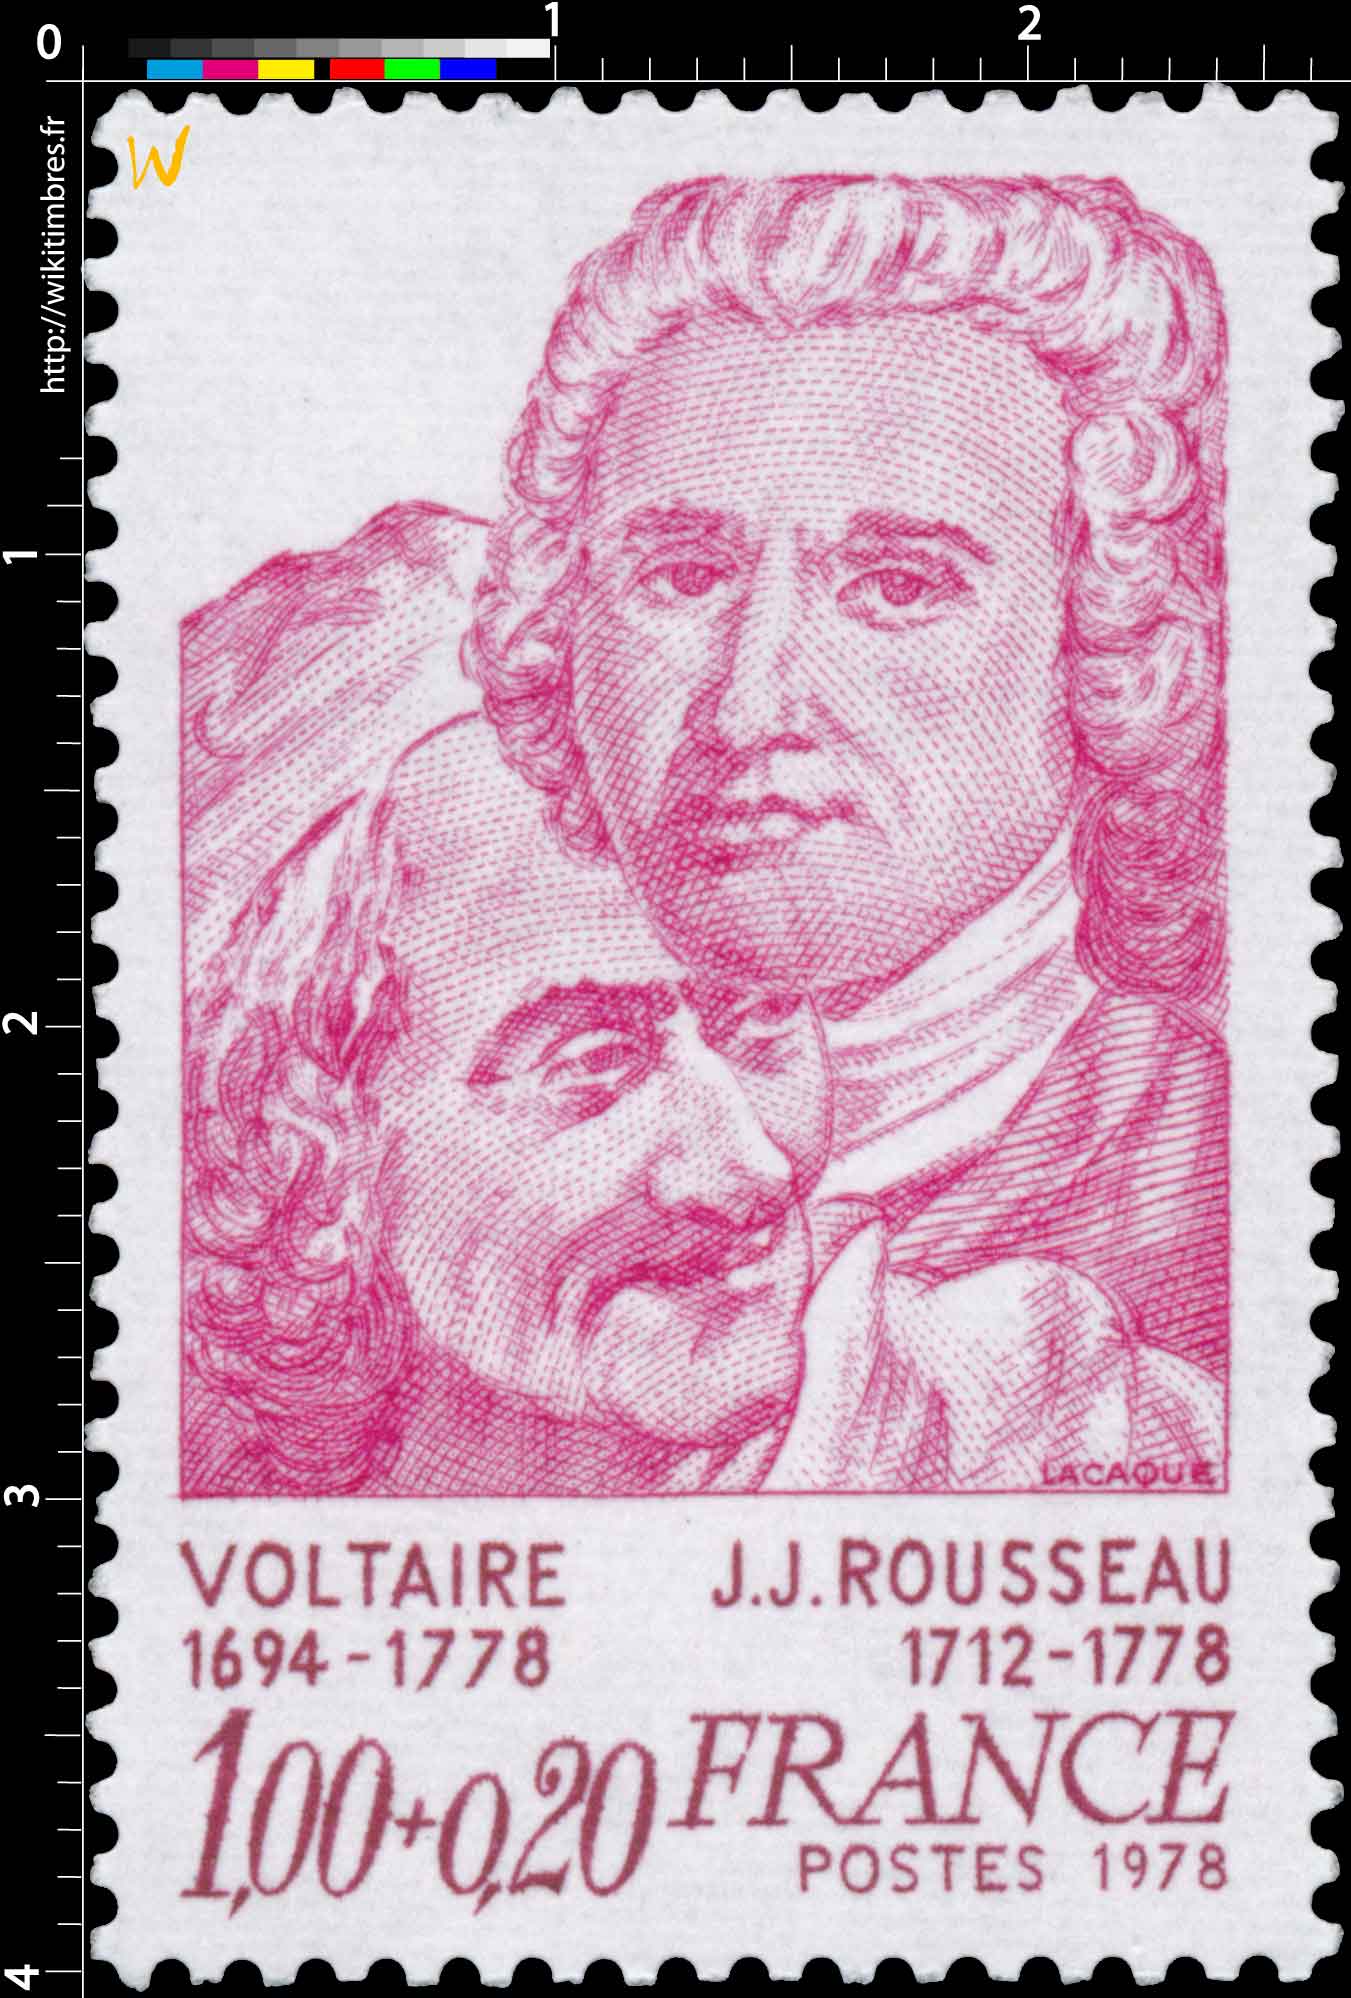 1978 VOLTAIRE 1694-1778 J.J. ROUSSEAU 1712-1778